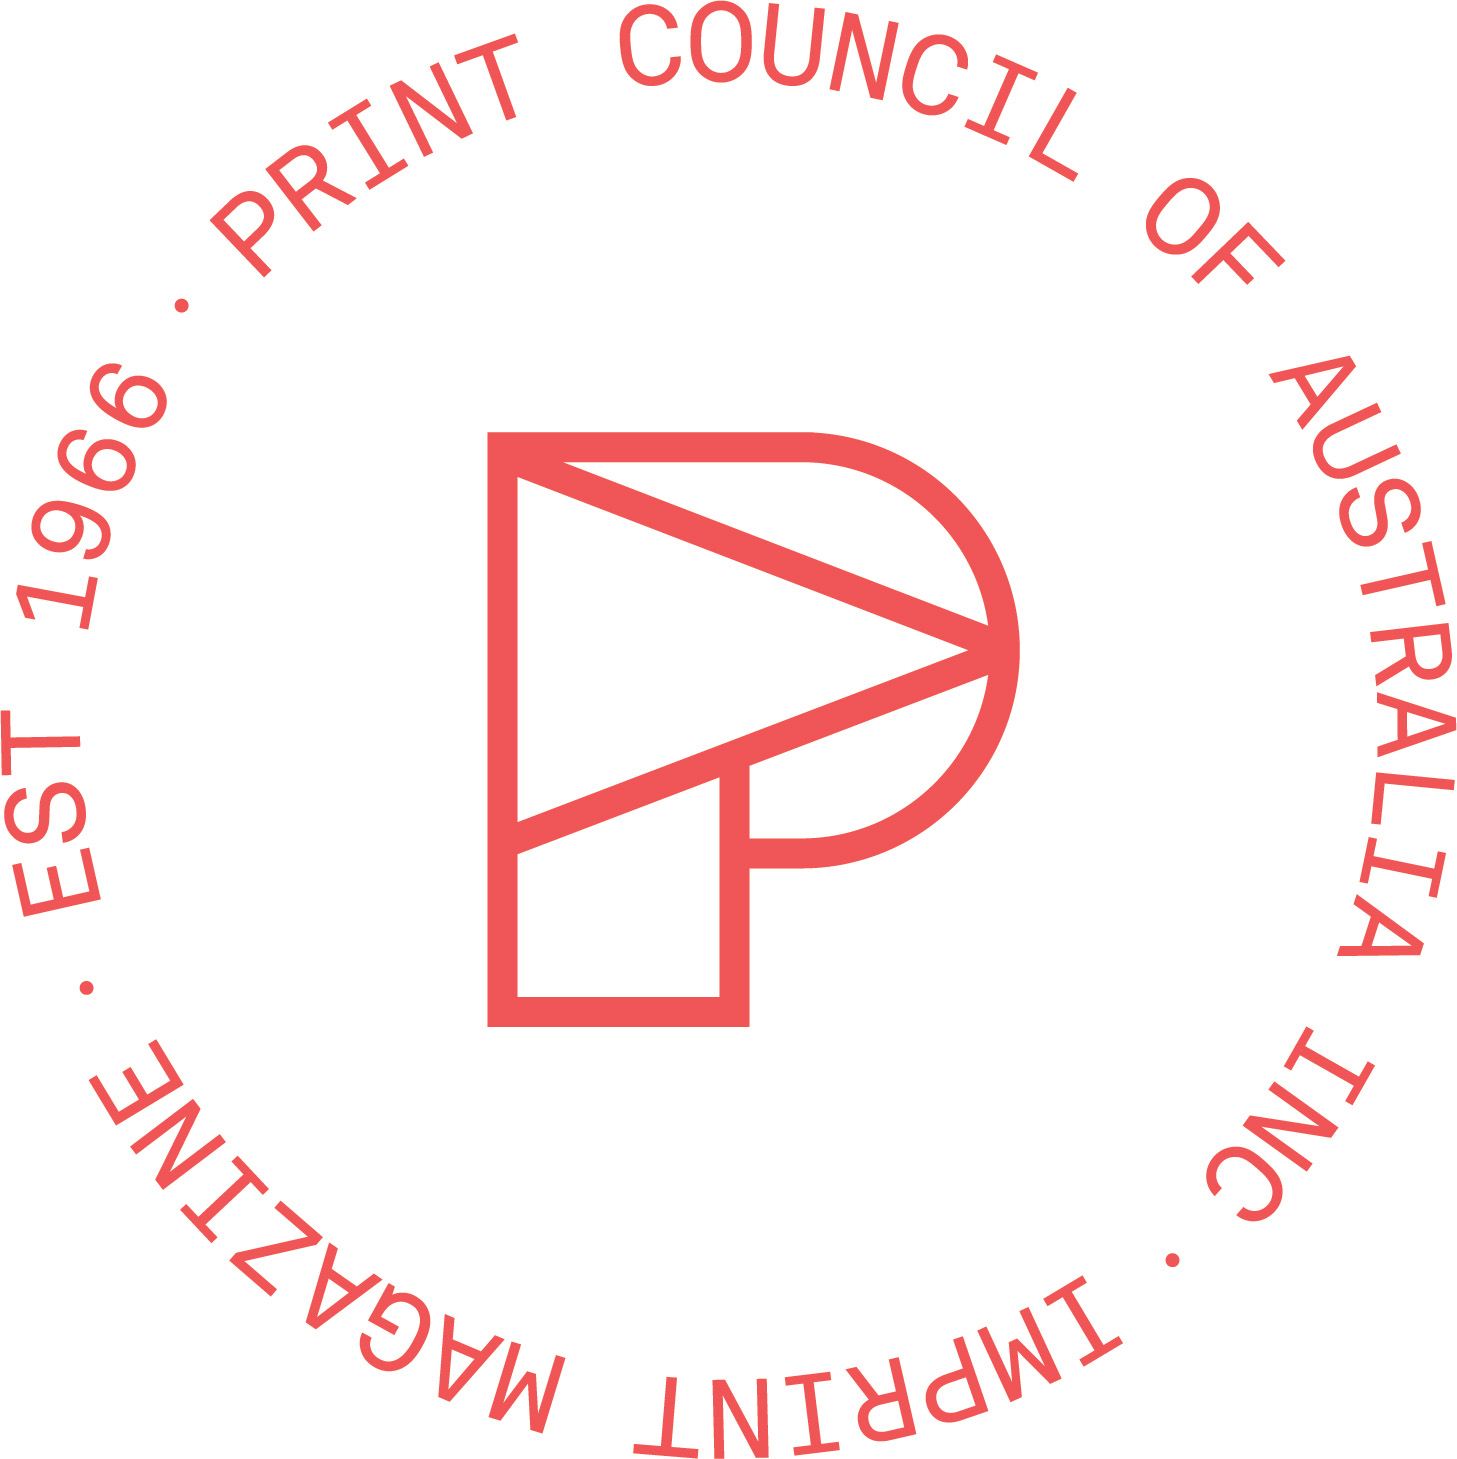 Print Council of Australia – PERMANENT Art Book Fair, Semi Permanent Sydney 2022